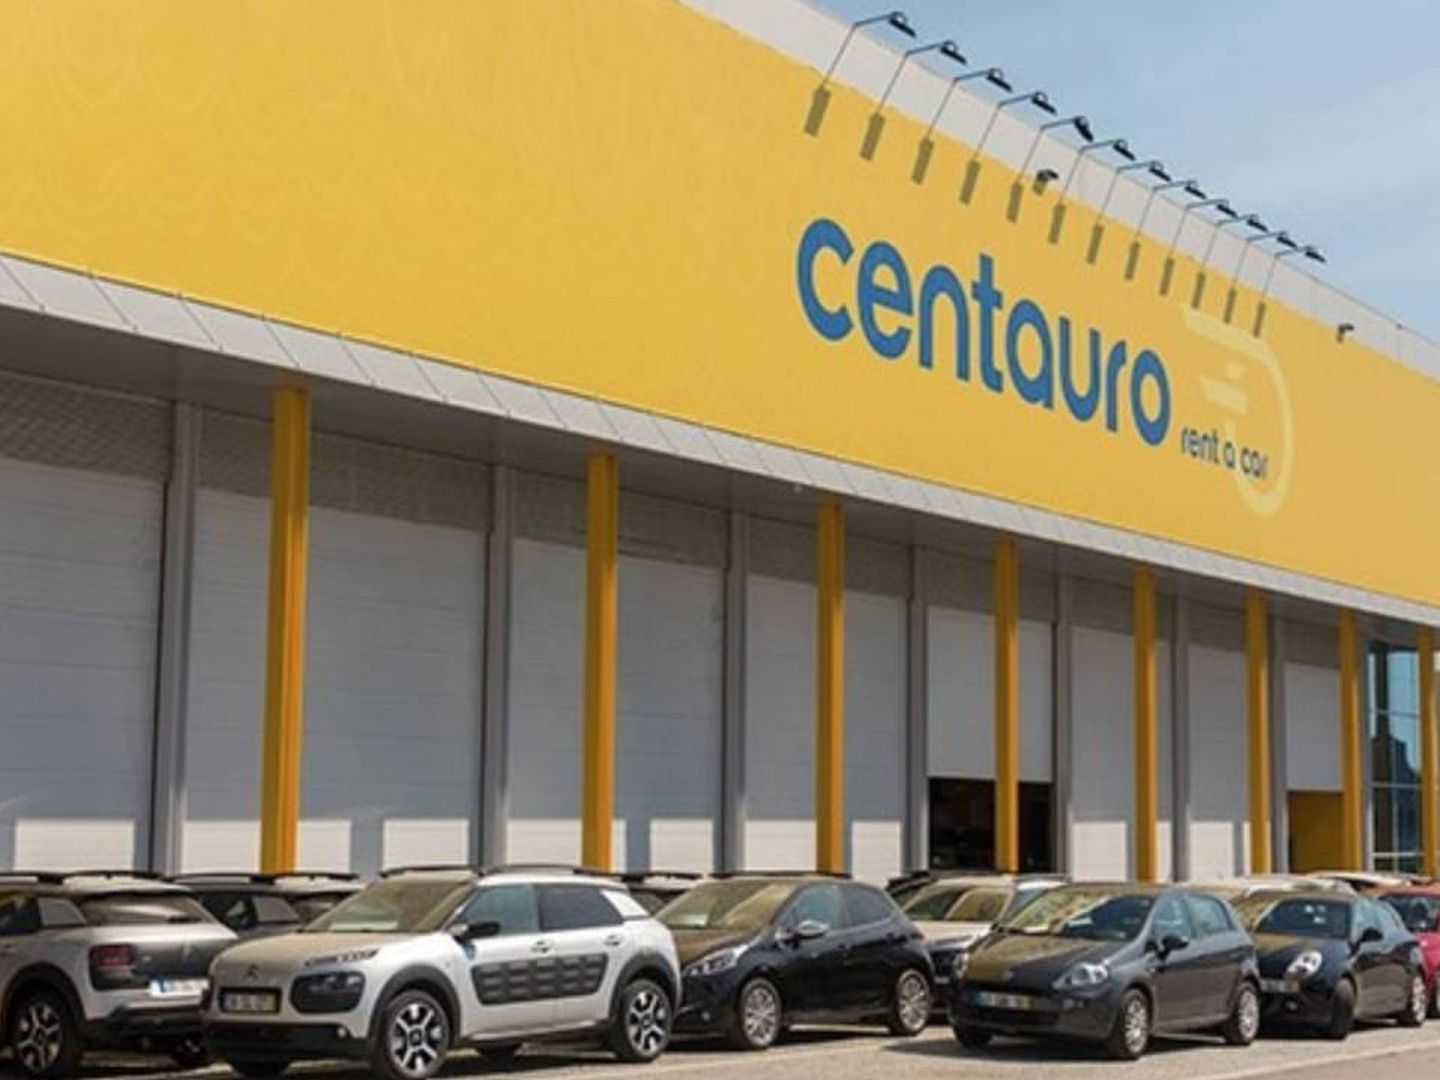 Oficina de Centauro en Oporto.